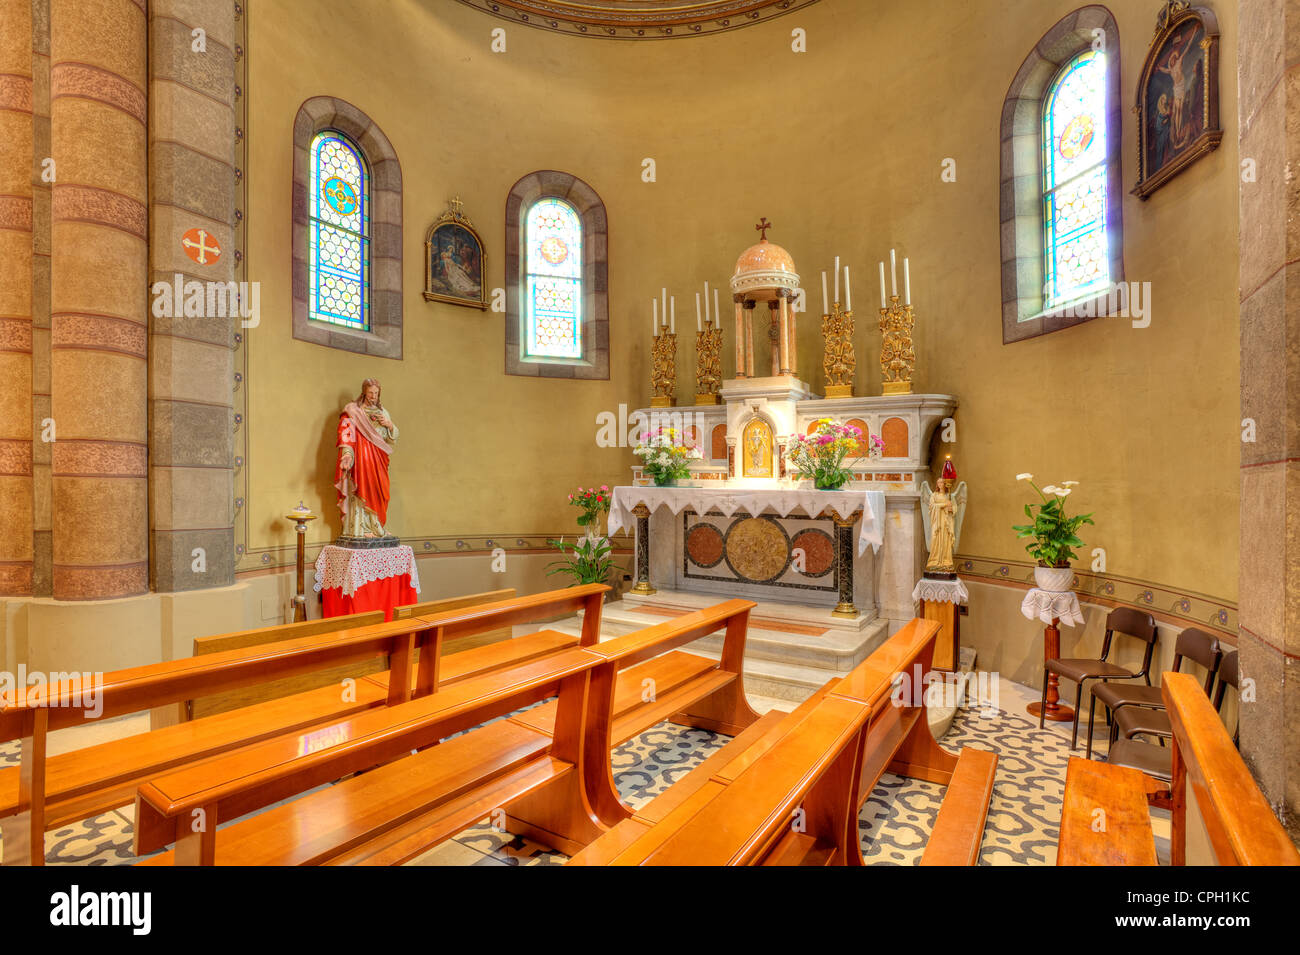 Statue von Jesus und Altar innerhalb der katholischen Kirche in Alba, Norditalien. Stockfoto